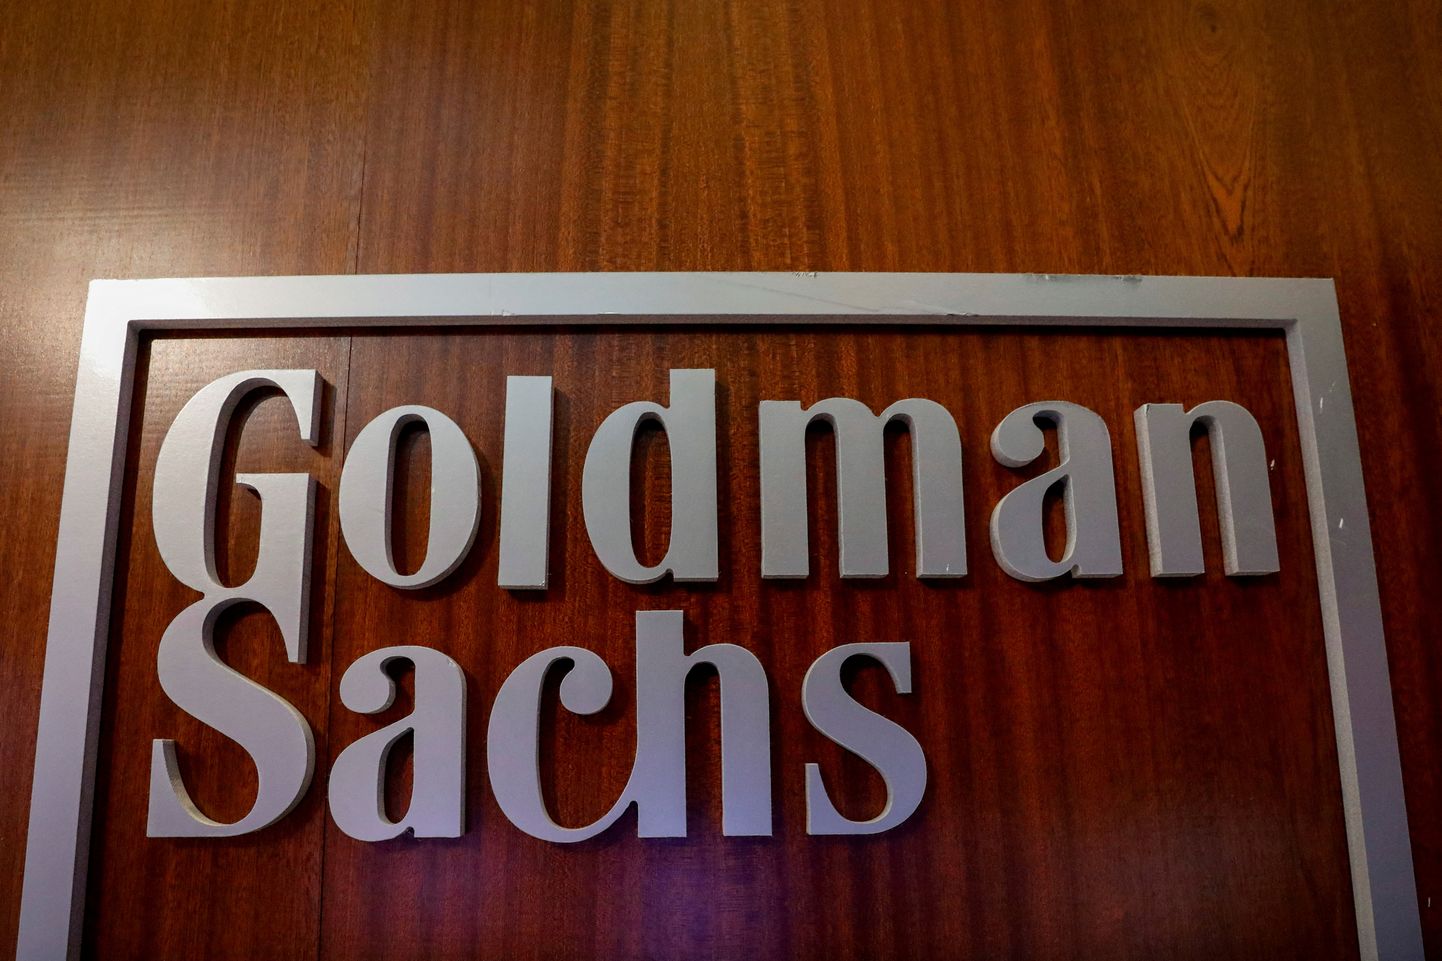 Goldman Sachs alandas Hiina pankade aktsiasoovitusi